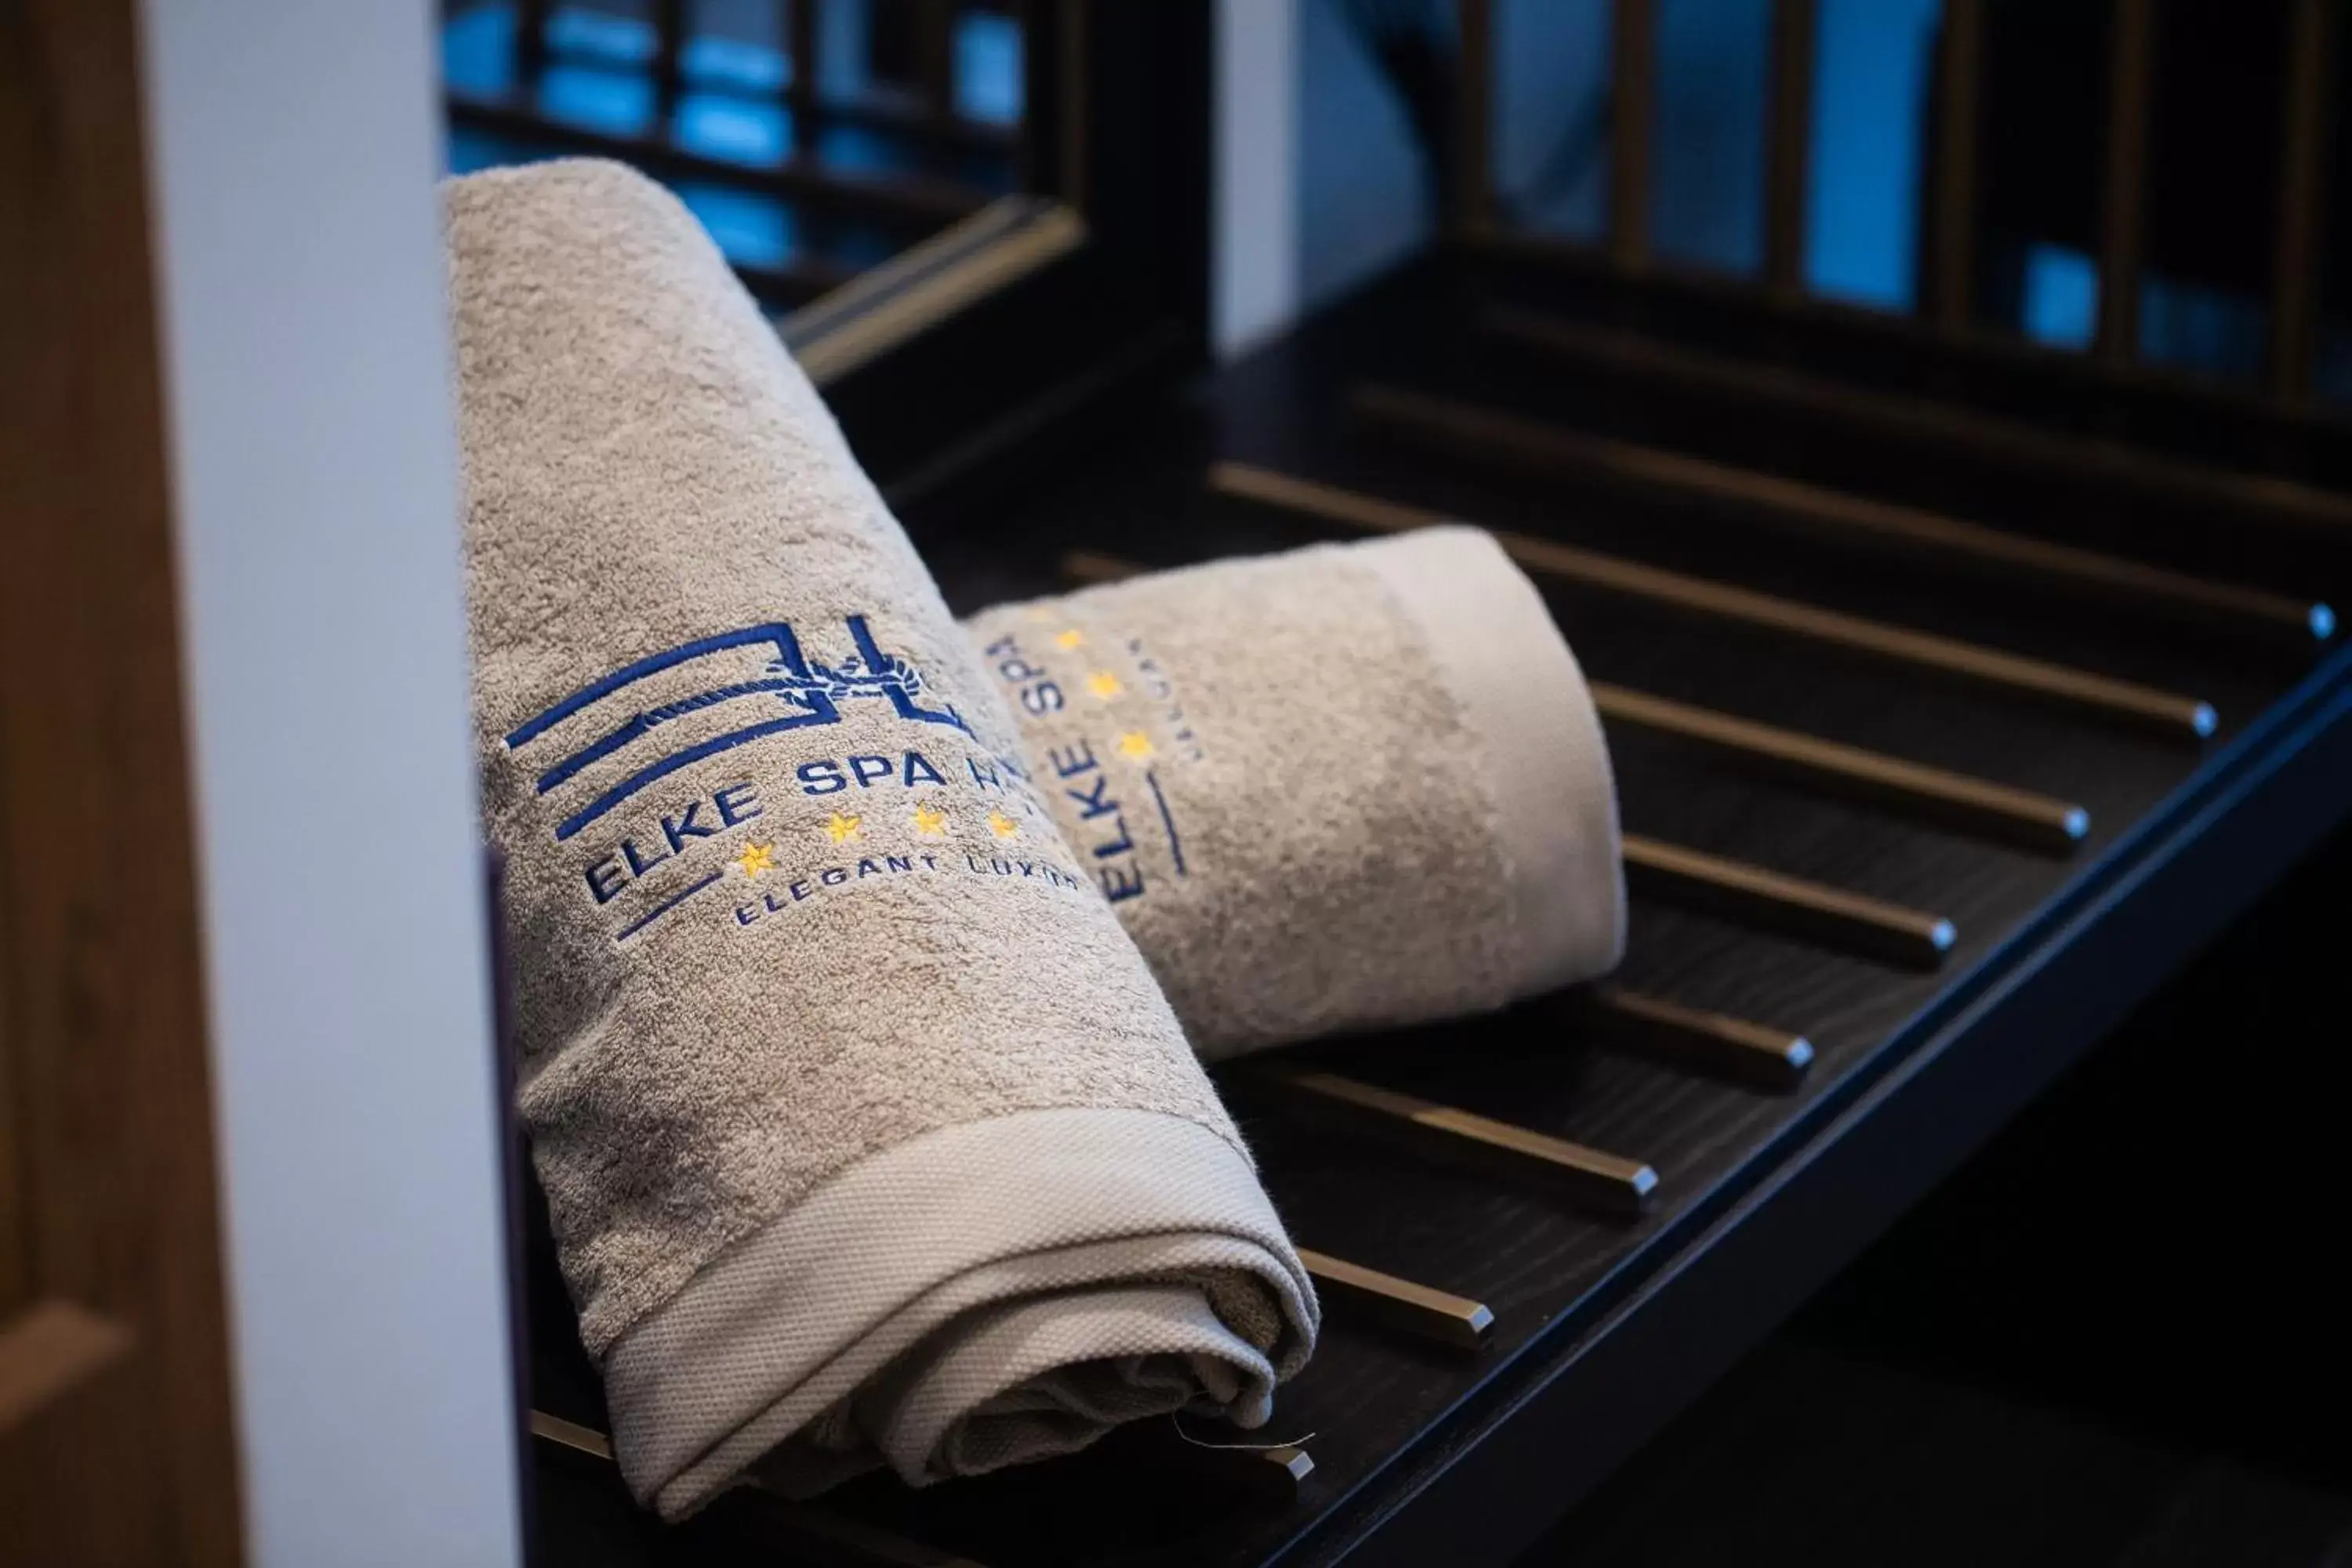 towels in Elke Spa Hotel